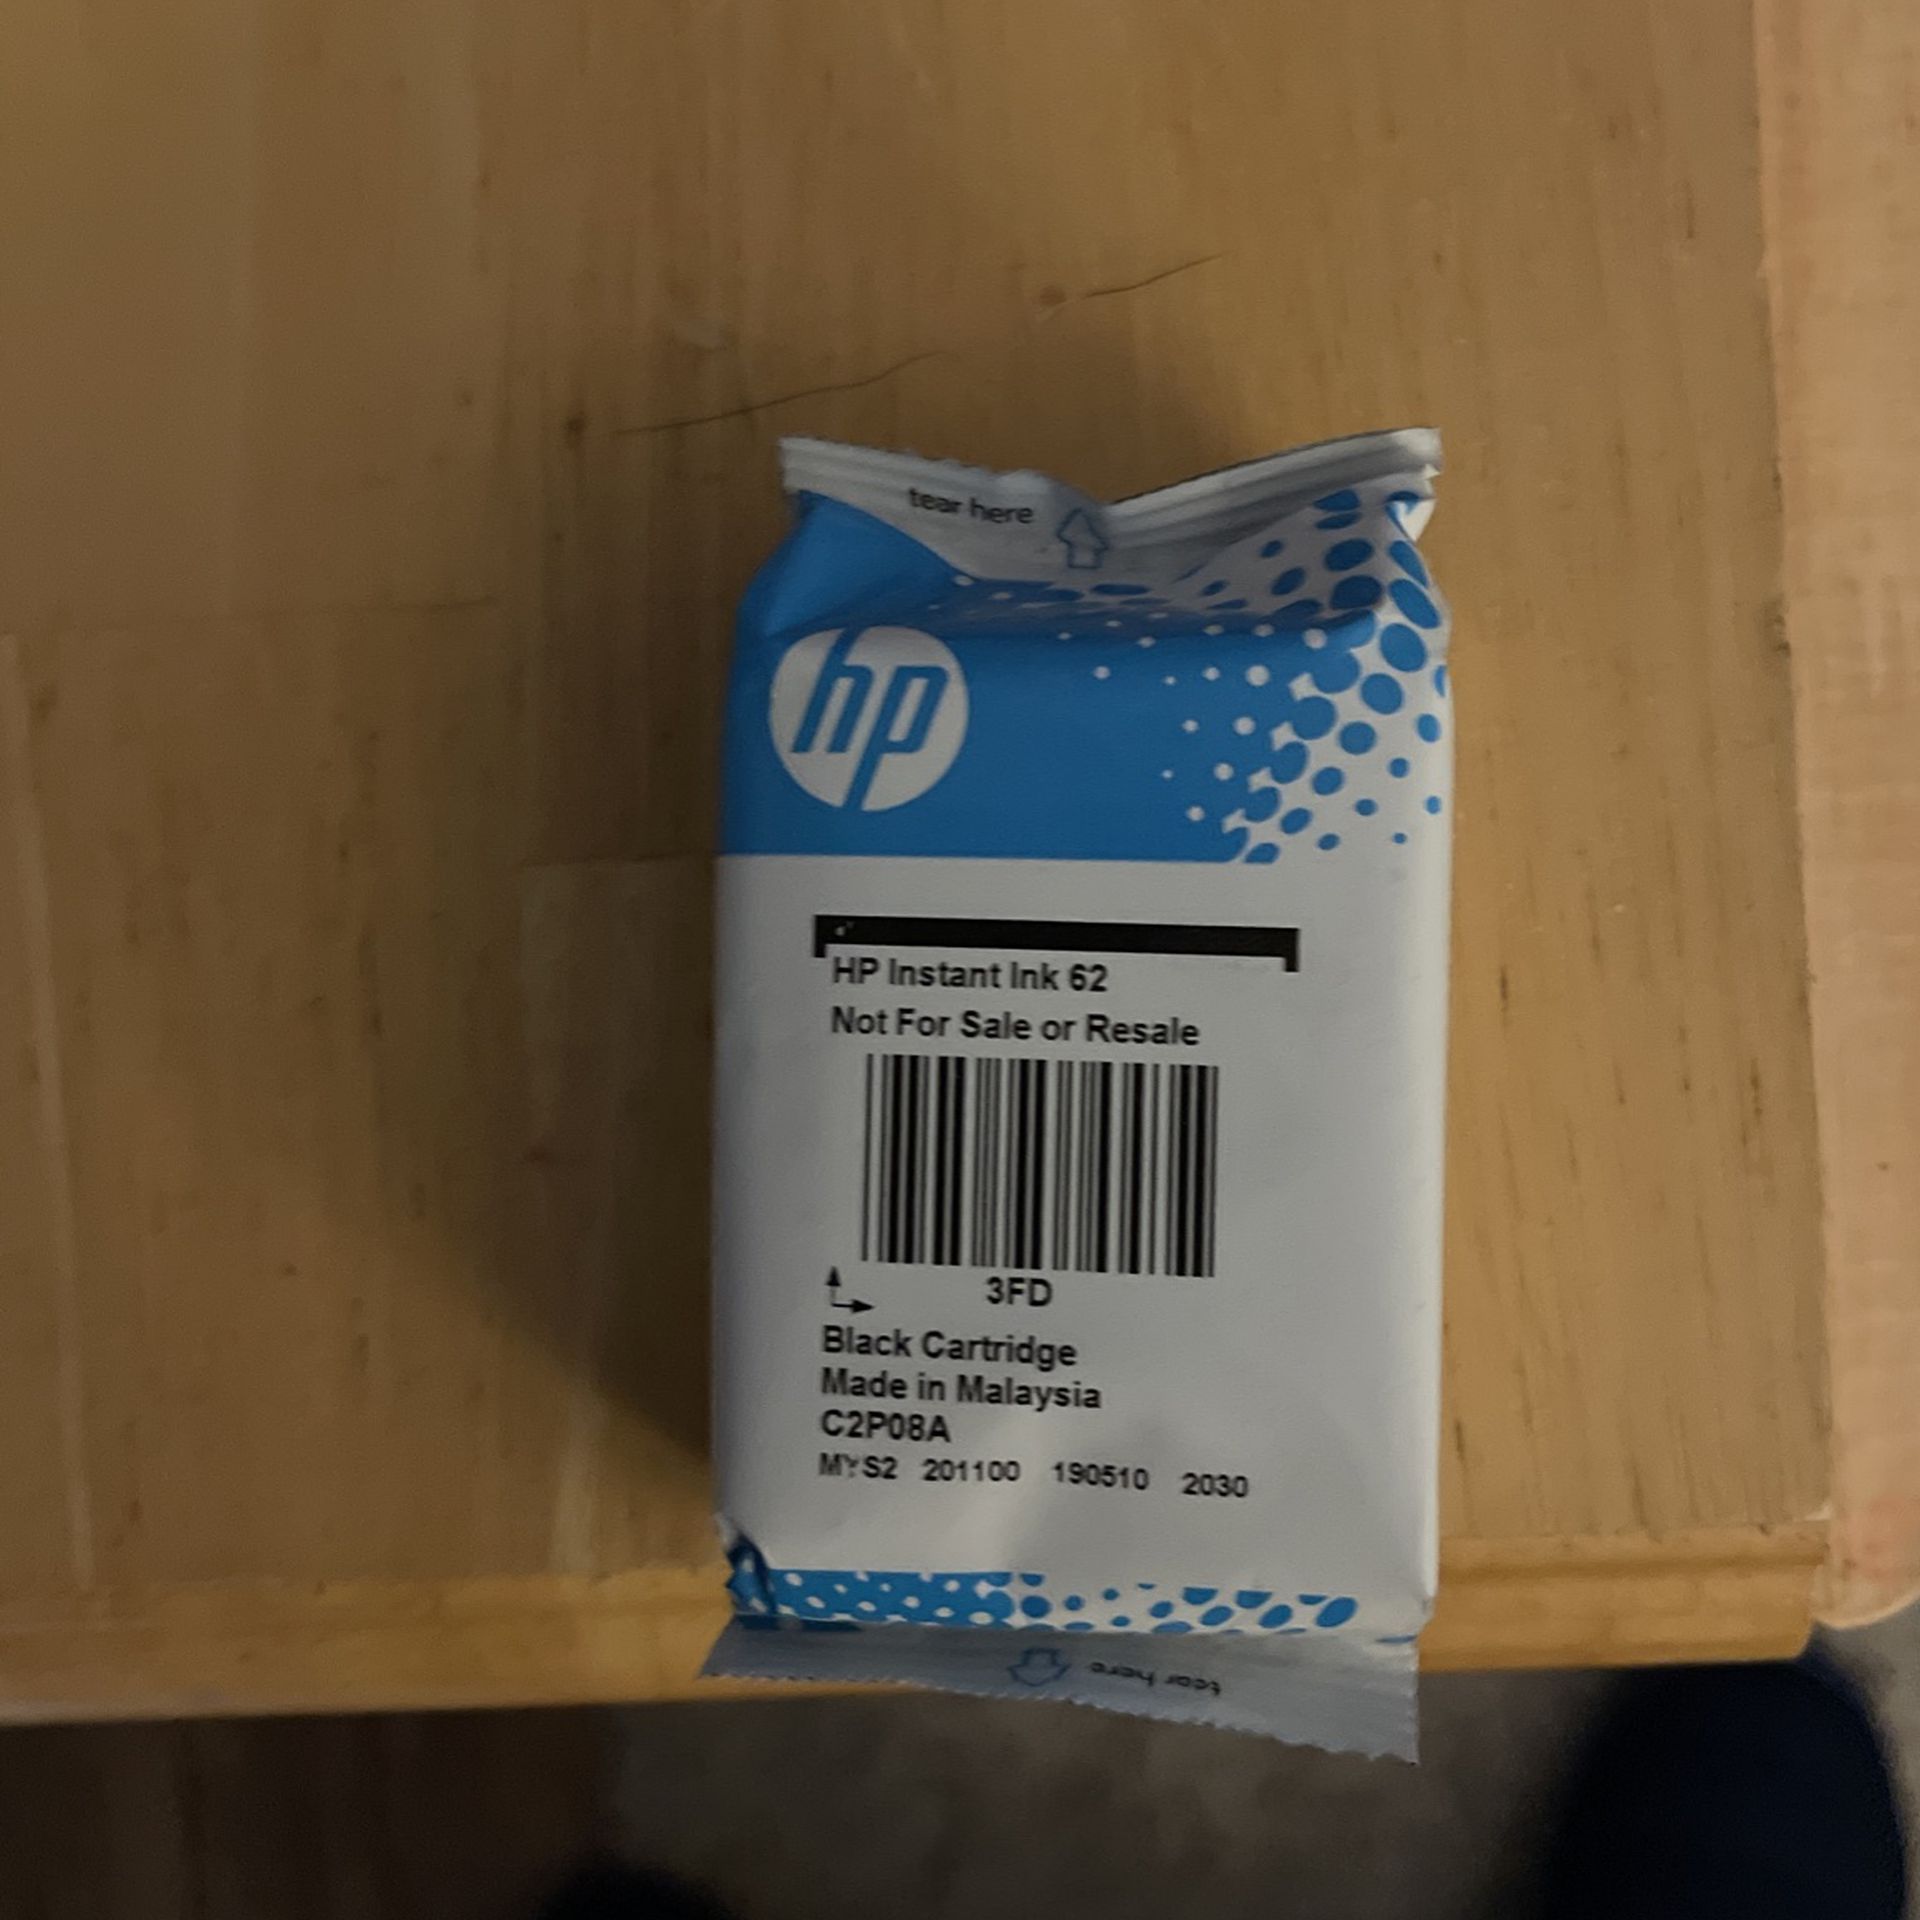 HP 62 Ink Cartridges